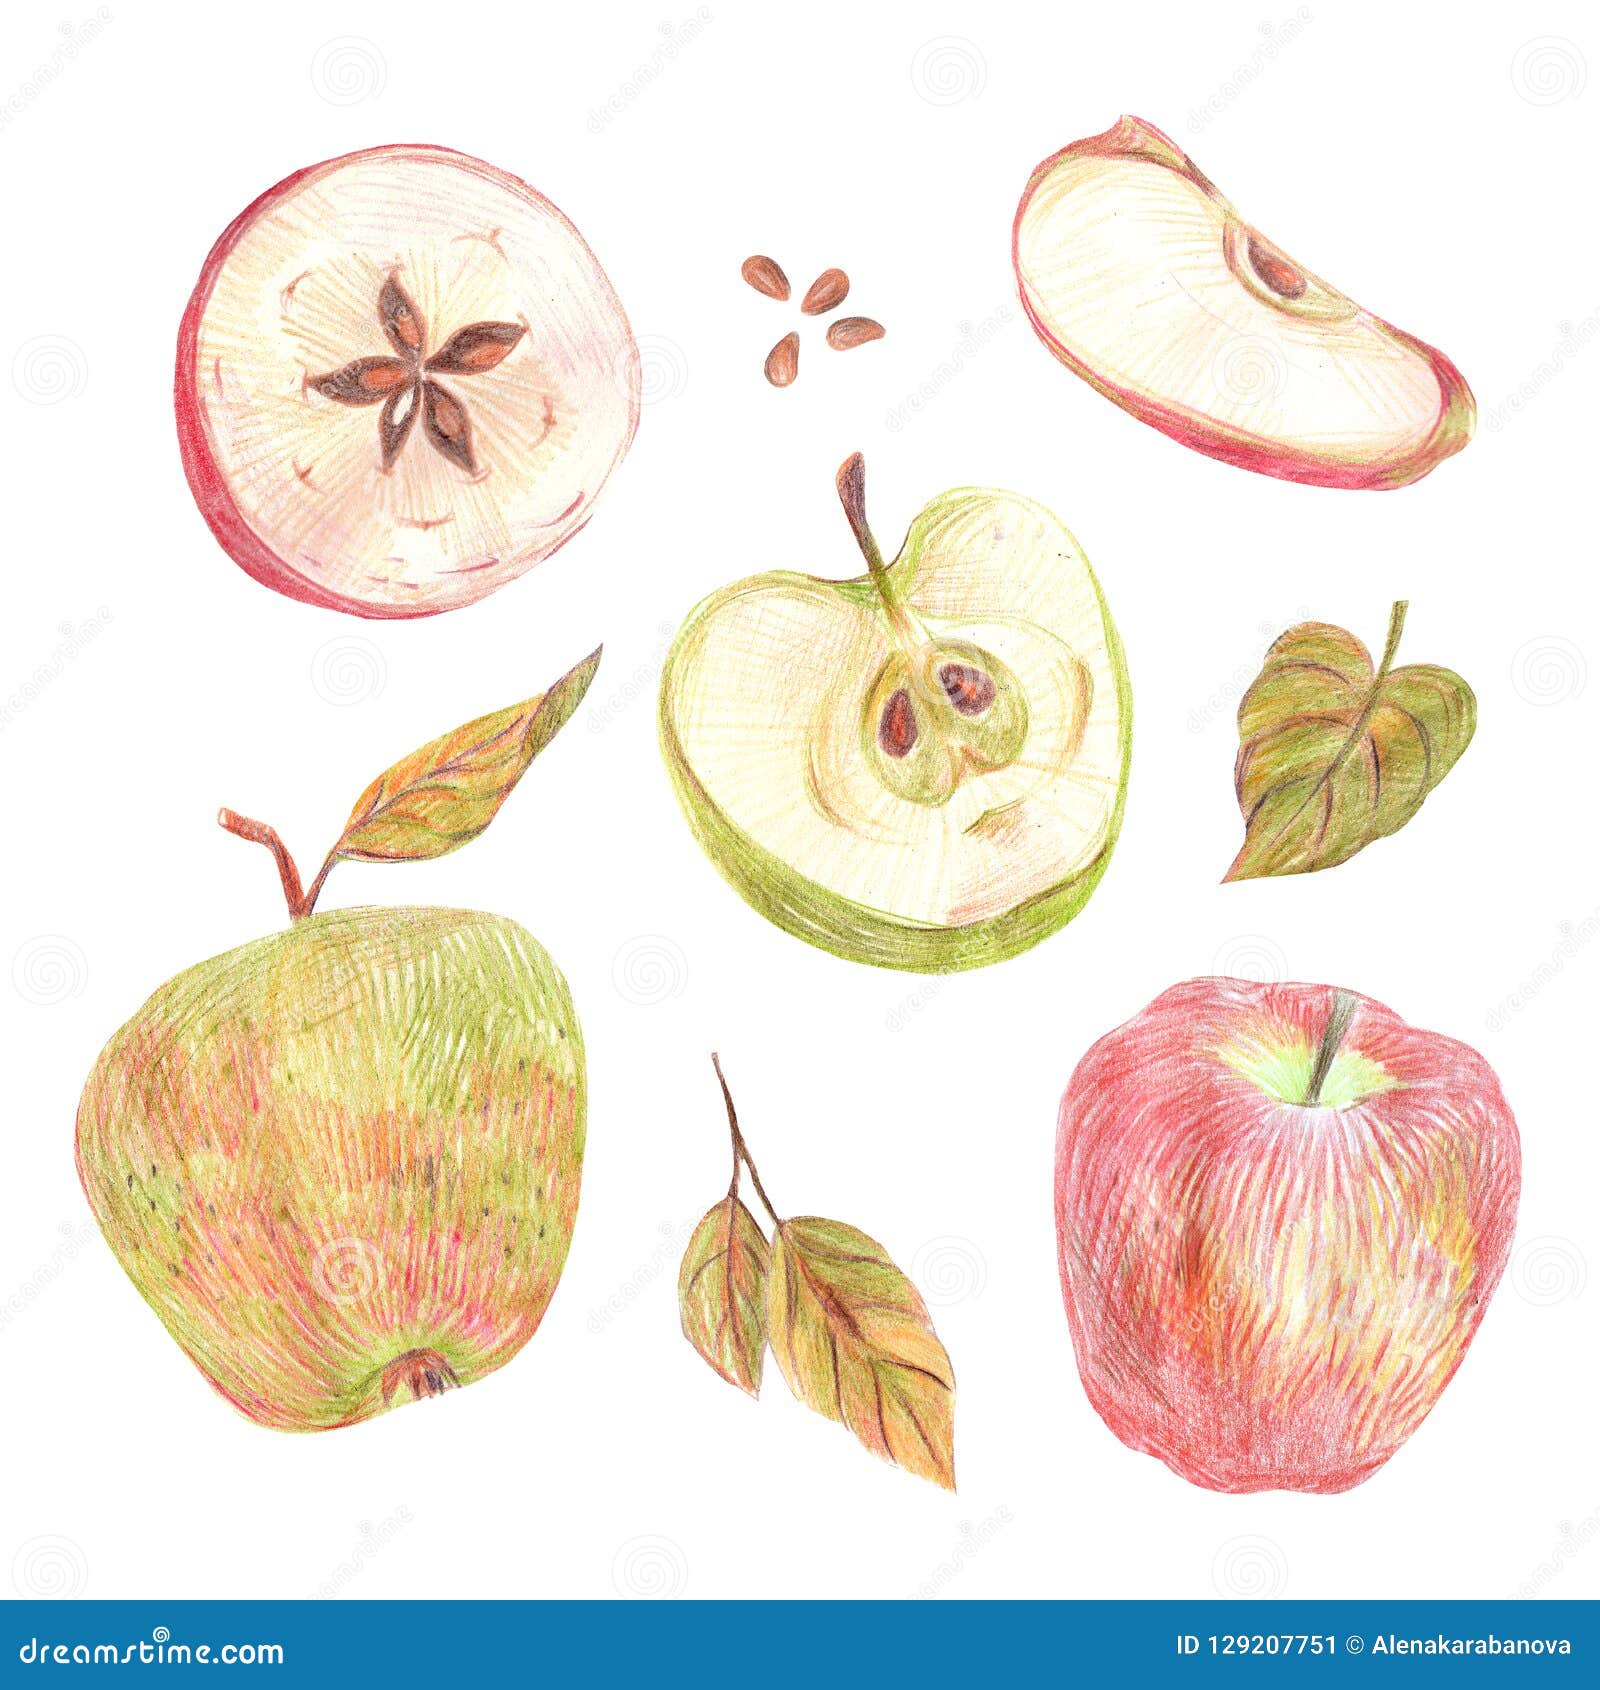 Яблоко в разрезе рисунок карандашом цветное